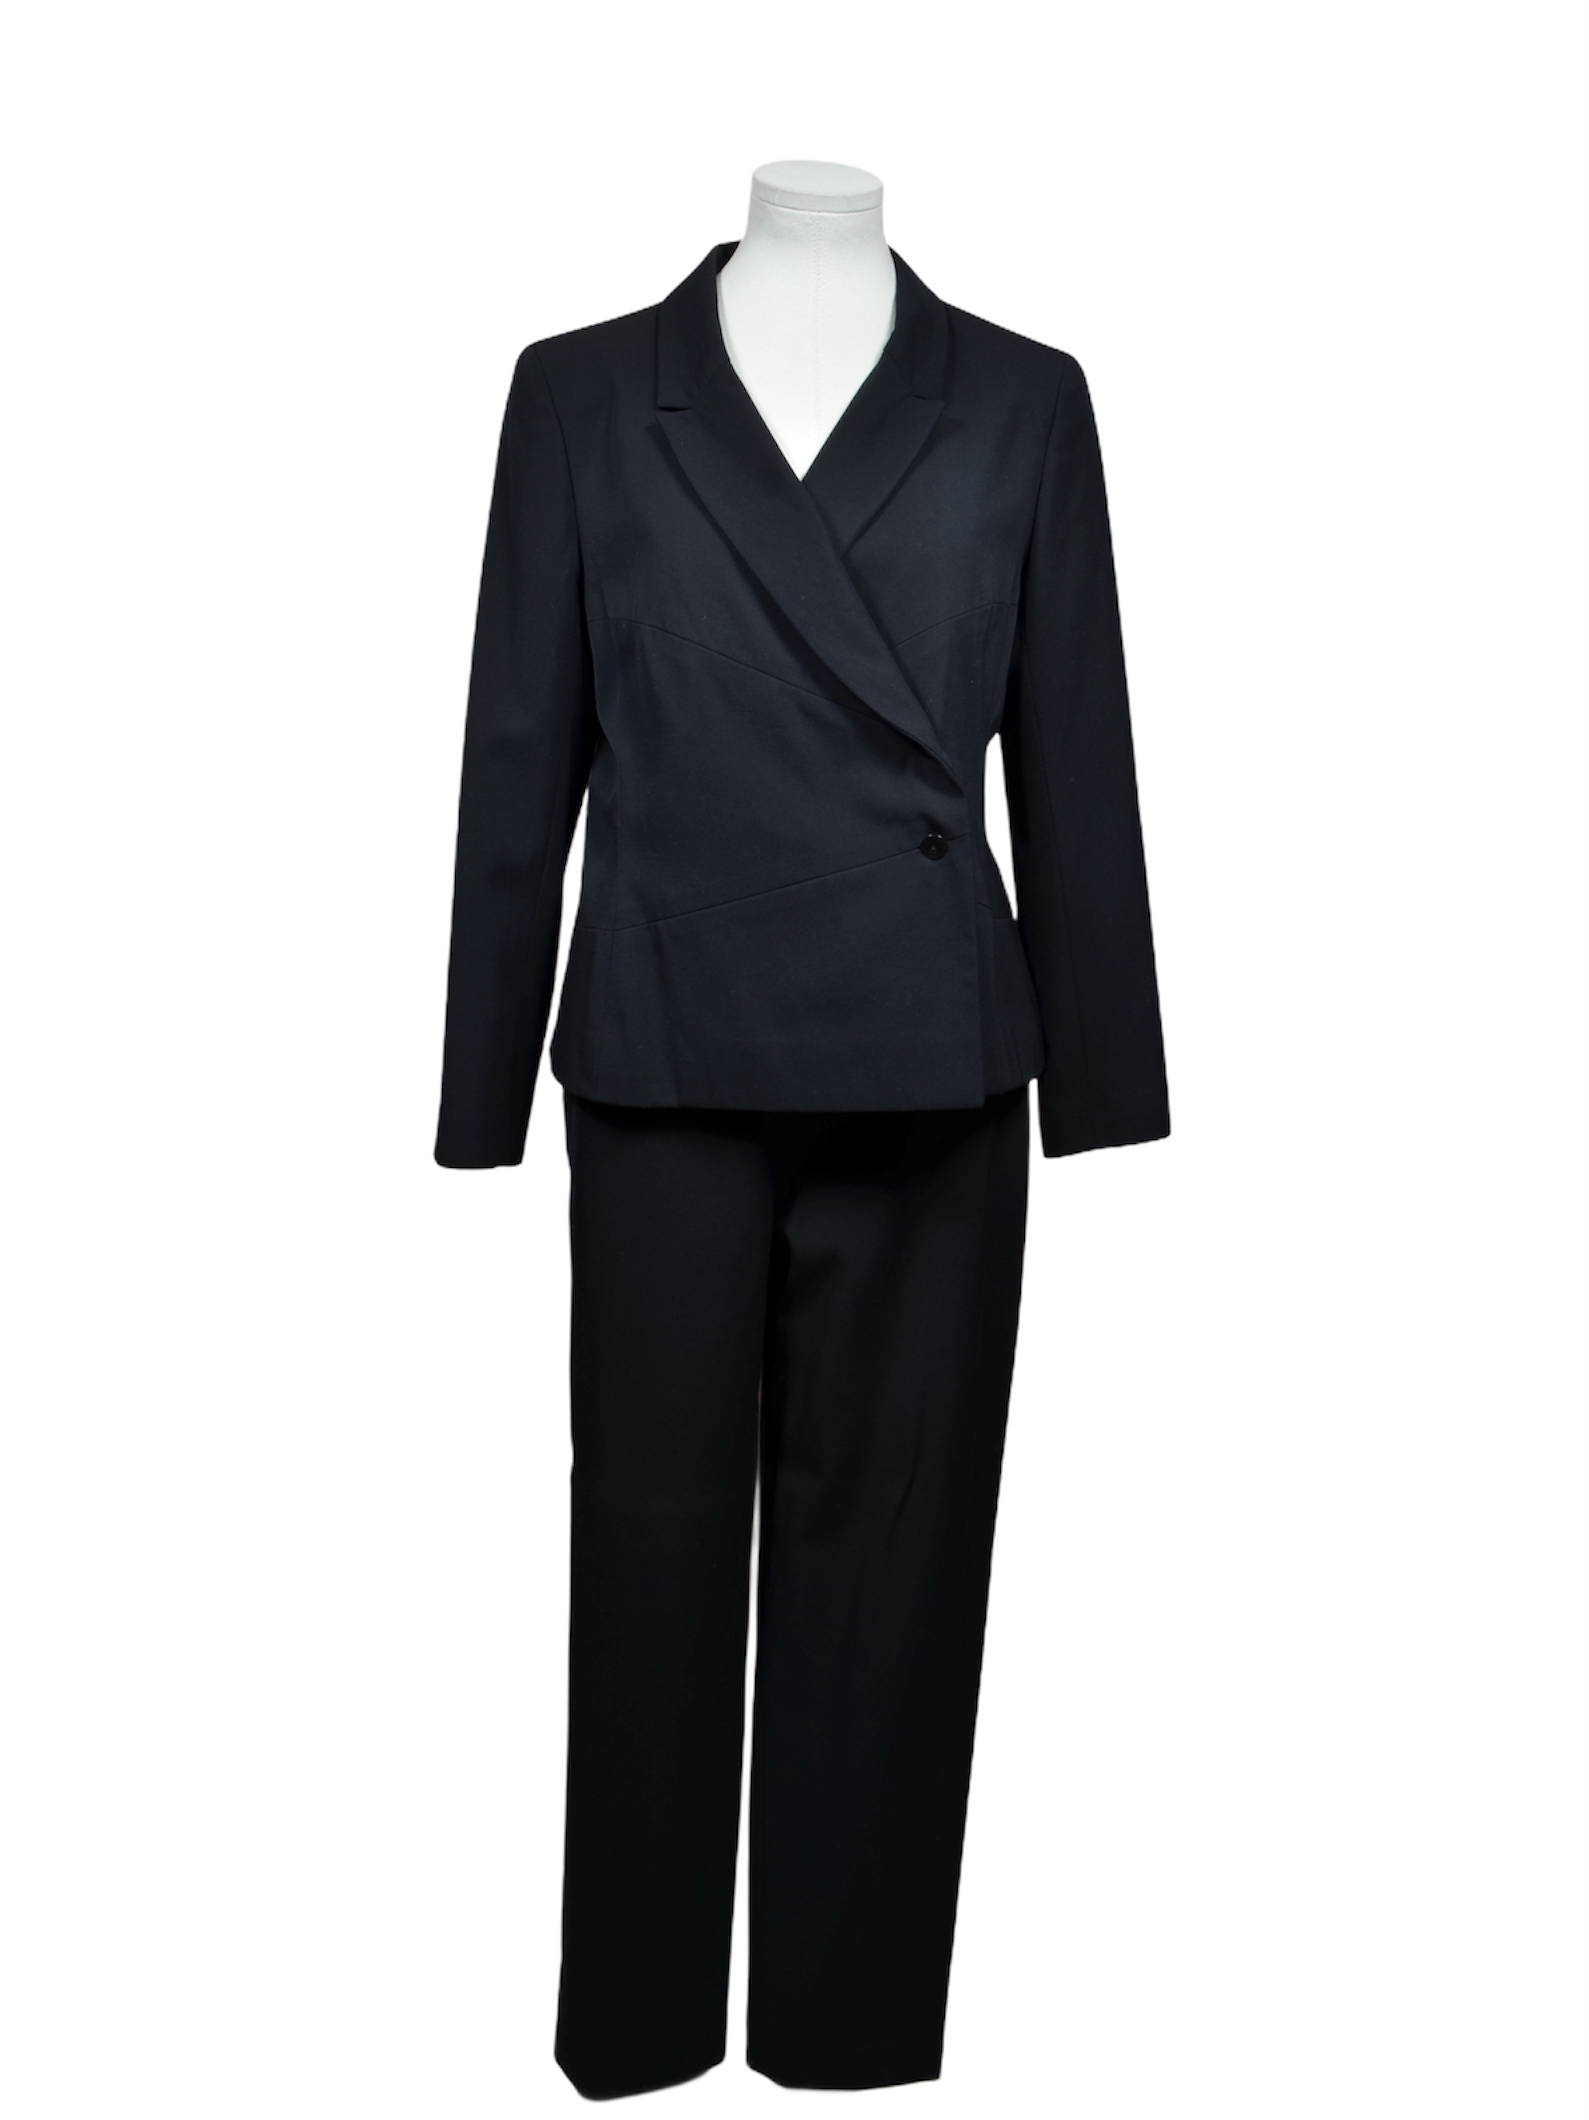 Chanel Anzug schwarz Schurwolle 38 schwarz Suit black